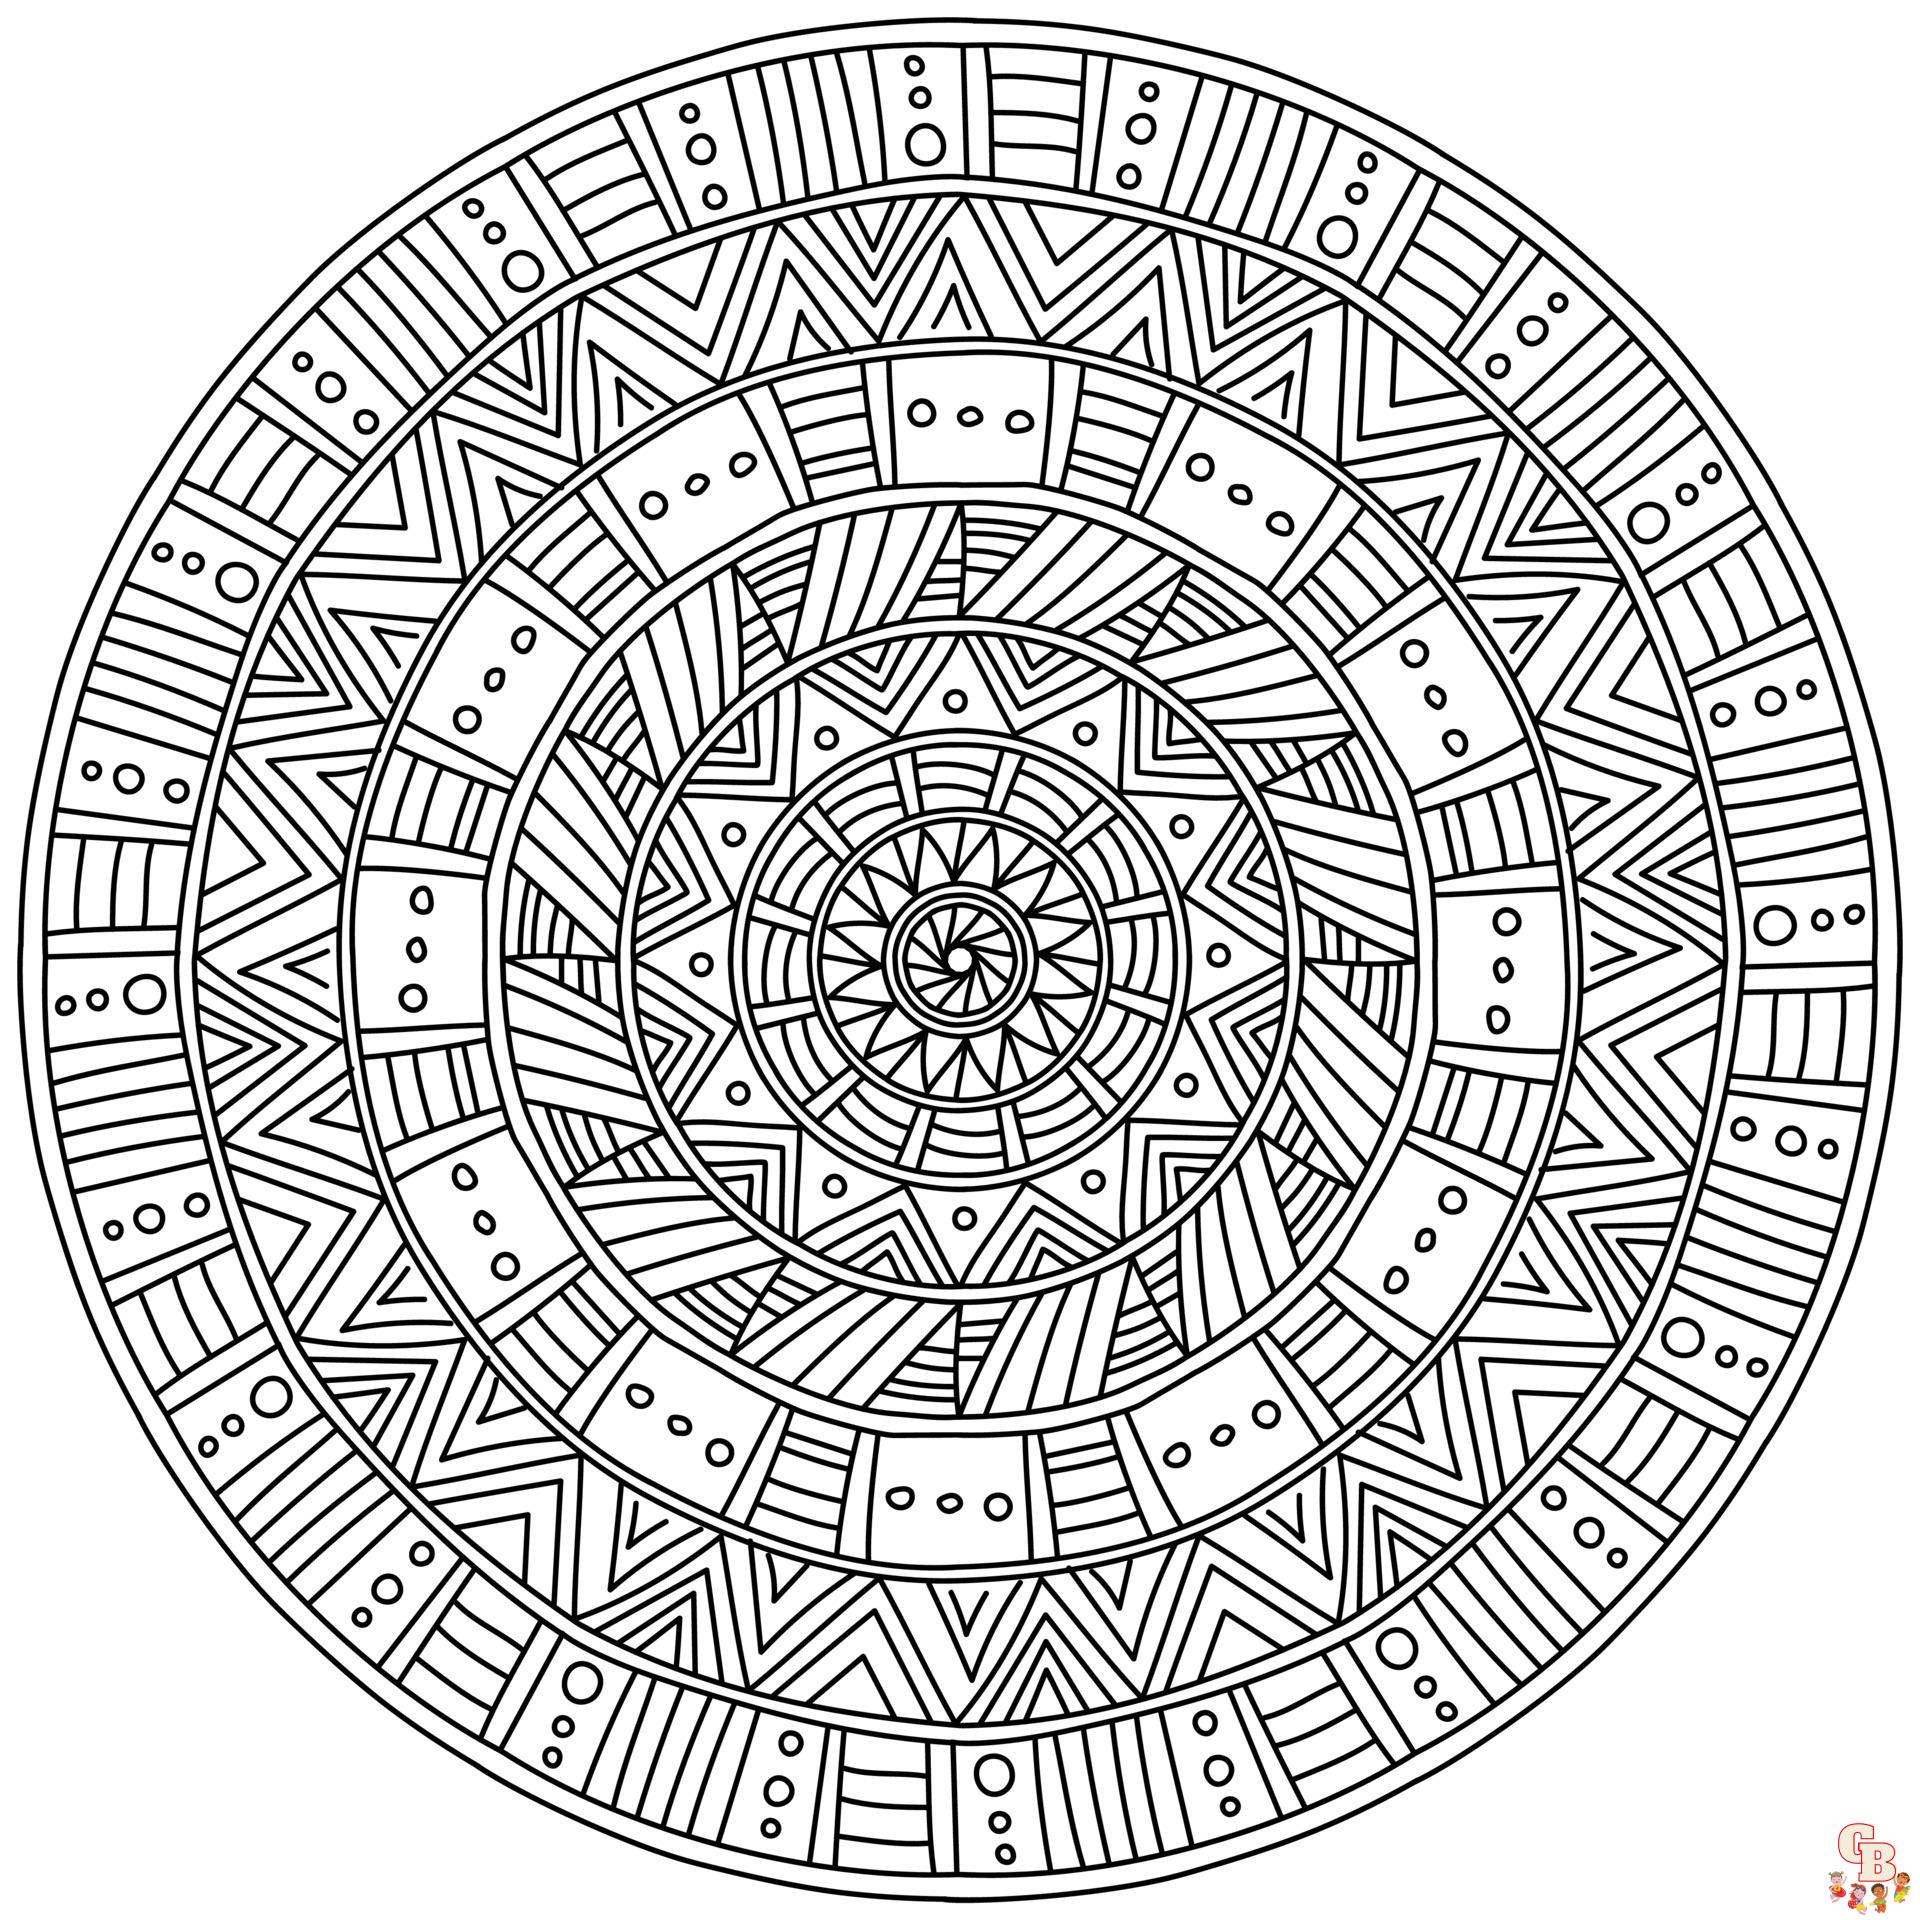 Coloriage Le mandala est un dessin inscrit dans un cercle